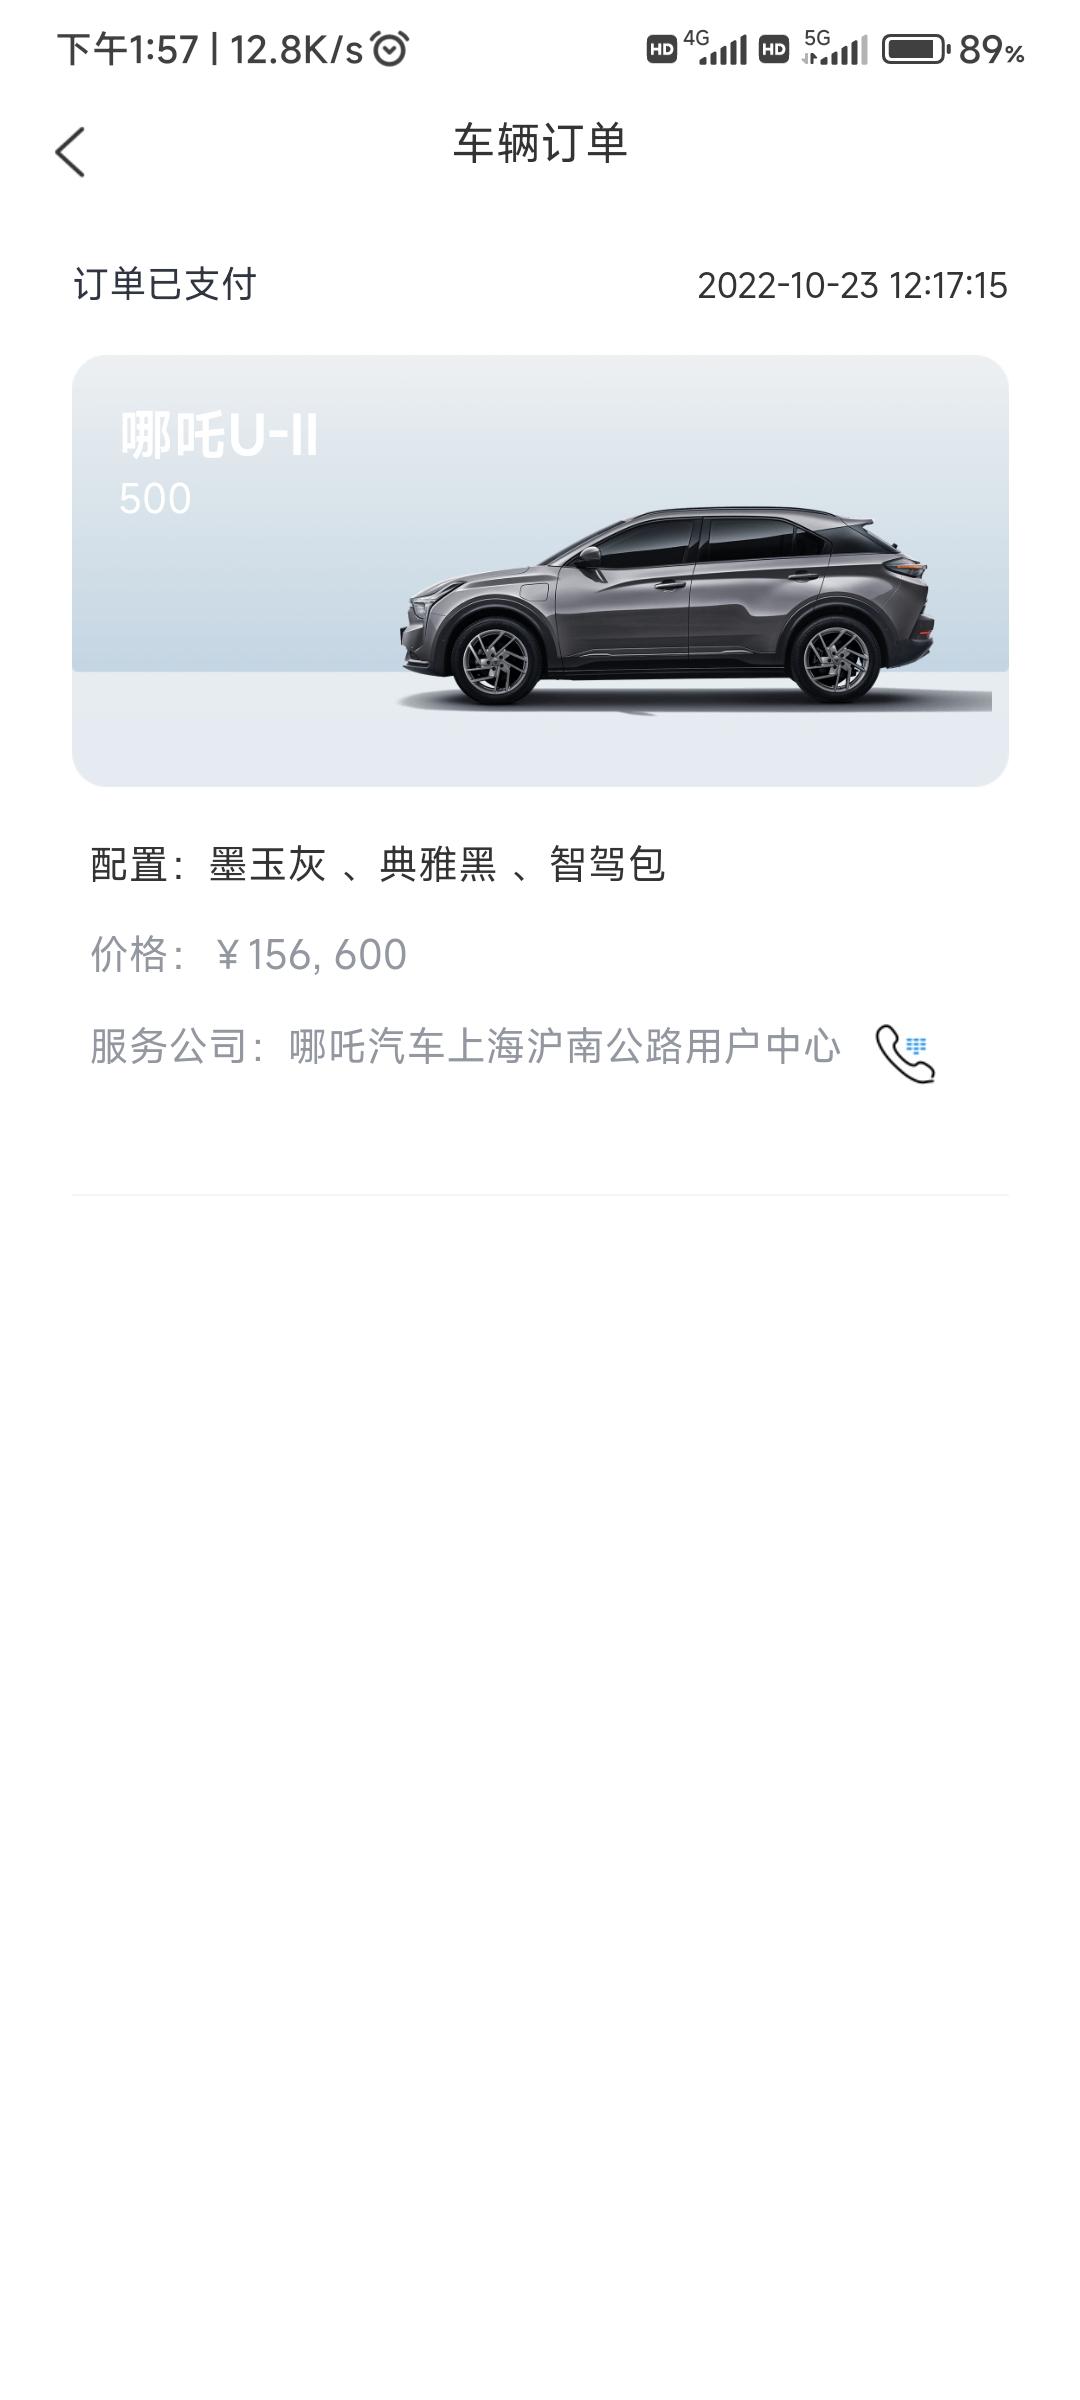 哪吒哪吒U 上海提车一般需要多久?十月底订单。销售说年前能提车。